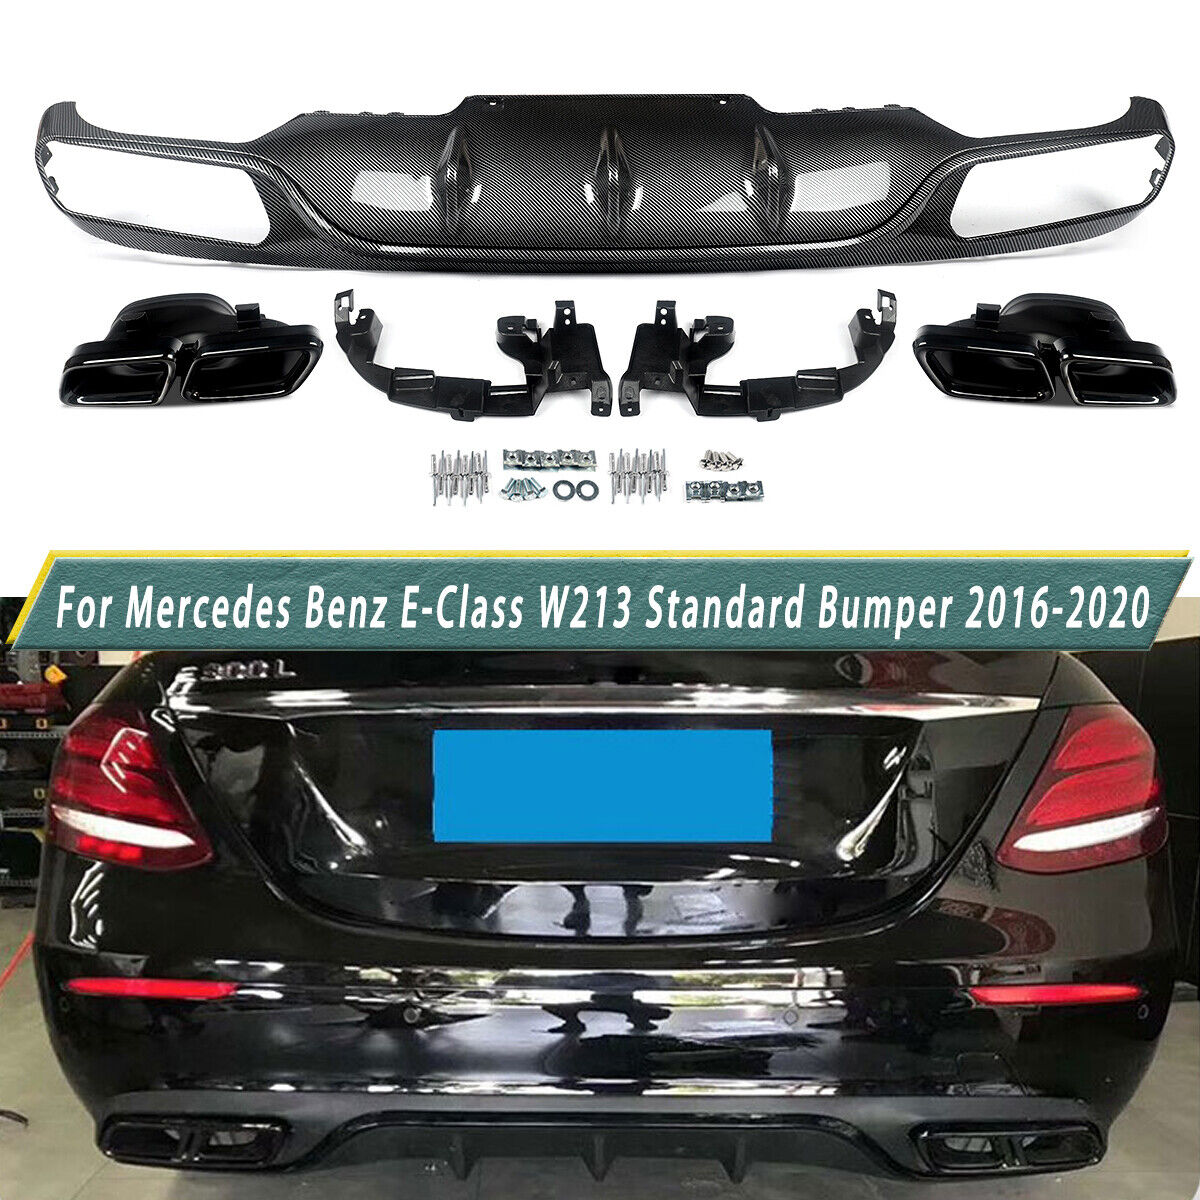 Rear Diffuser & Exhaust Tips For Mercedes-Benz E200 E250 E300 W213 2016-2020